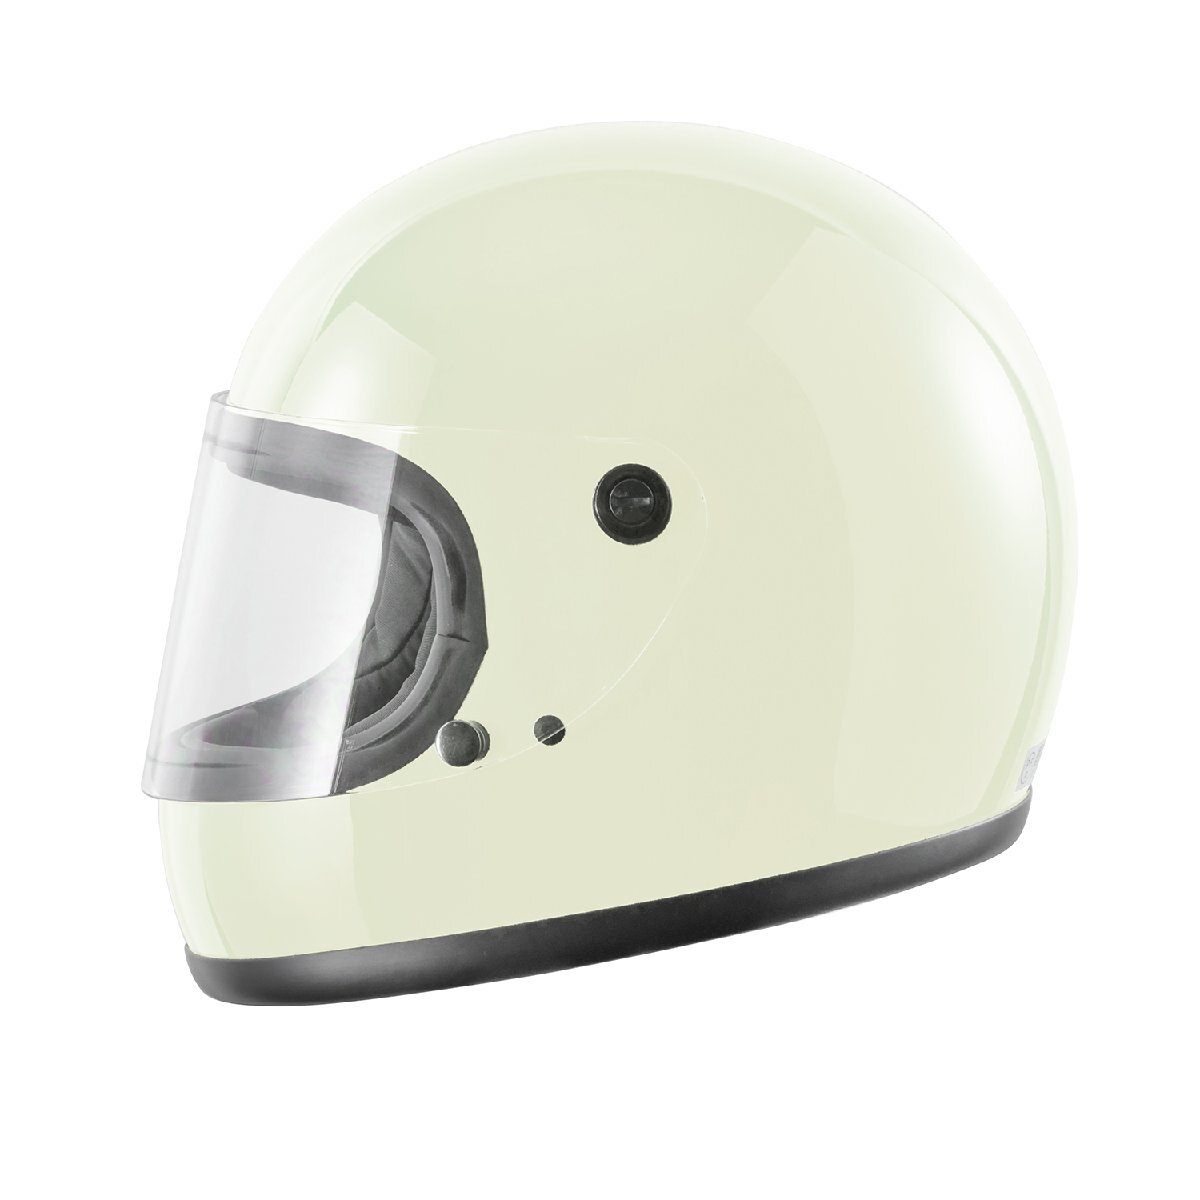 ヘルメット フルフェイス ホワイト ビンテージ レトロ 族ヘル 新品 SG・PSCマーク取得 全排気量対応 バイクパーツセンター_画像8